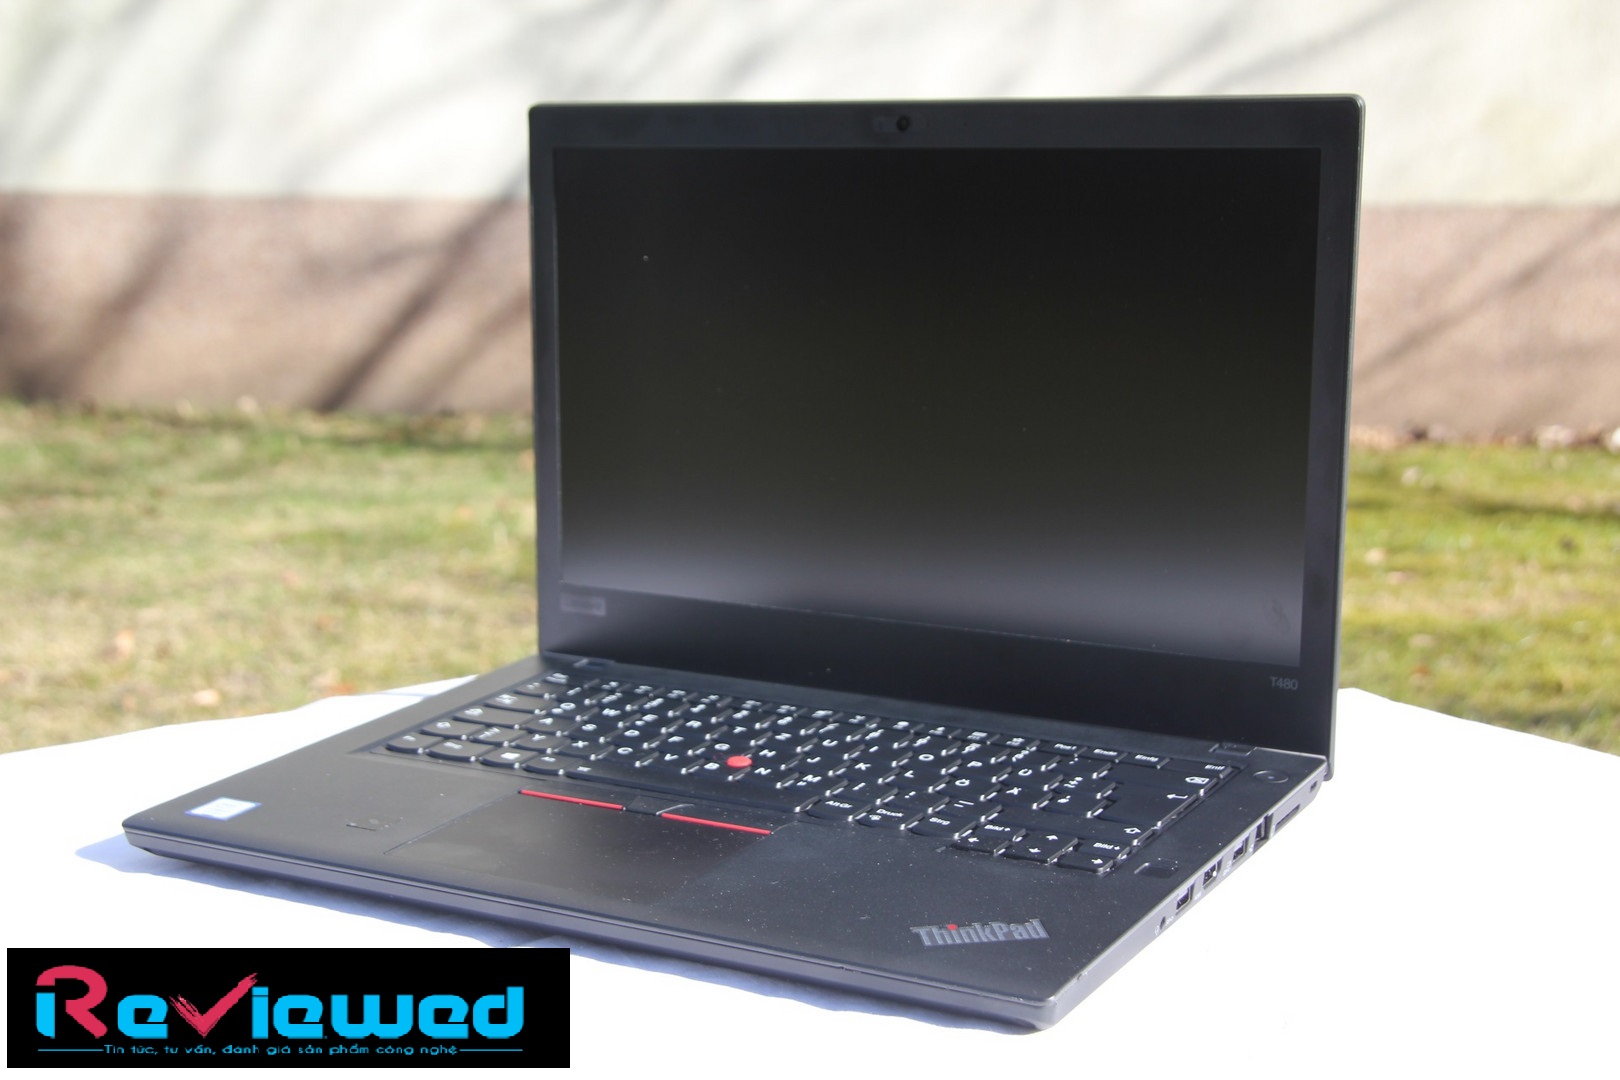 Đánh giá Laptop Lenovo Thinkpad T480 (i7-8550U, MX150, FHD), Chuyên trang tư vấn về Laptop